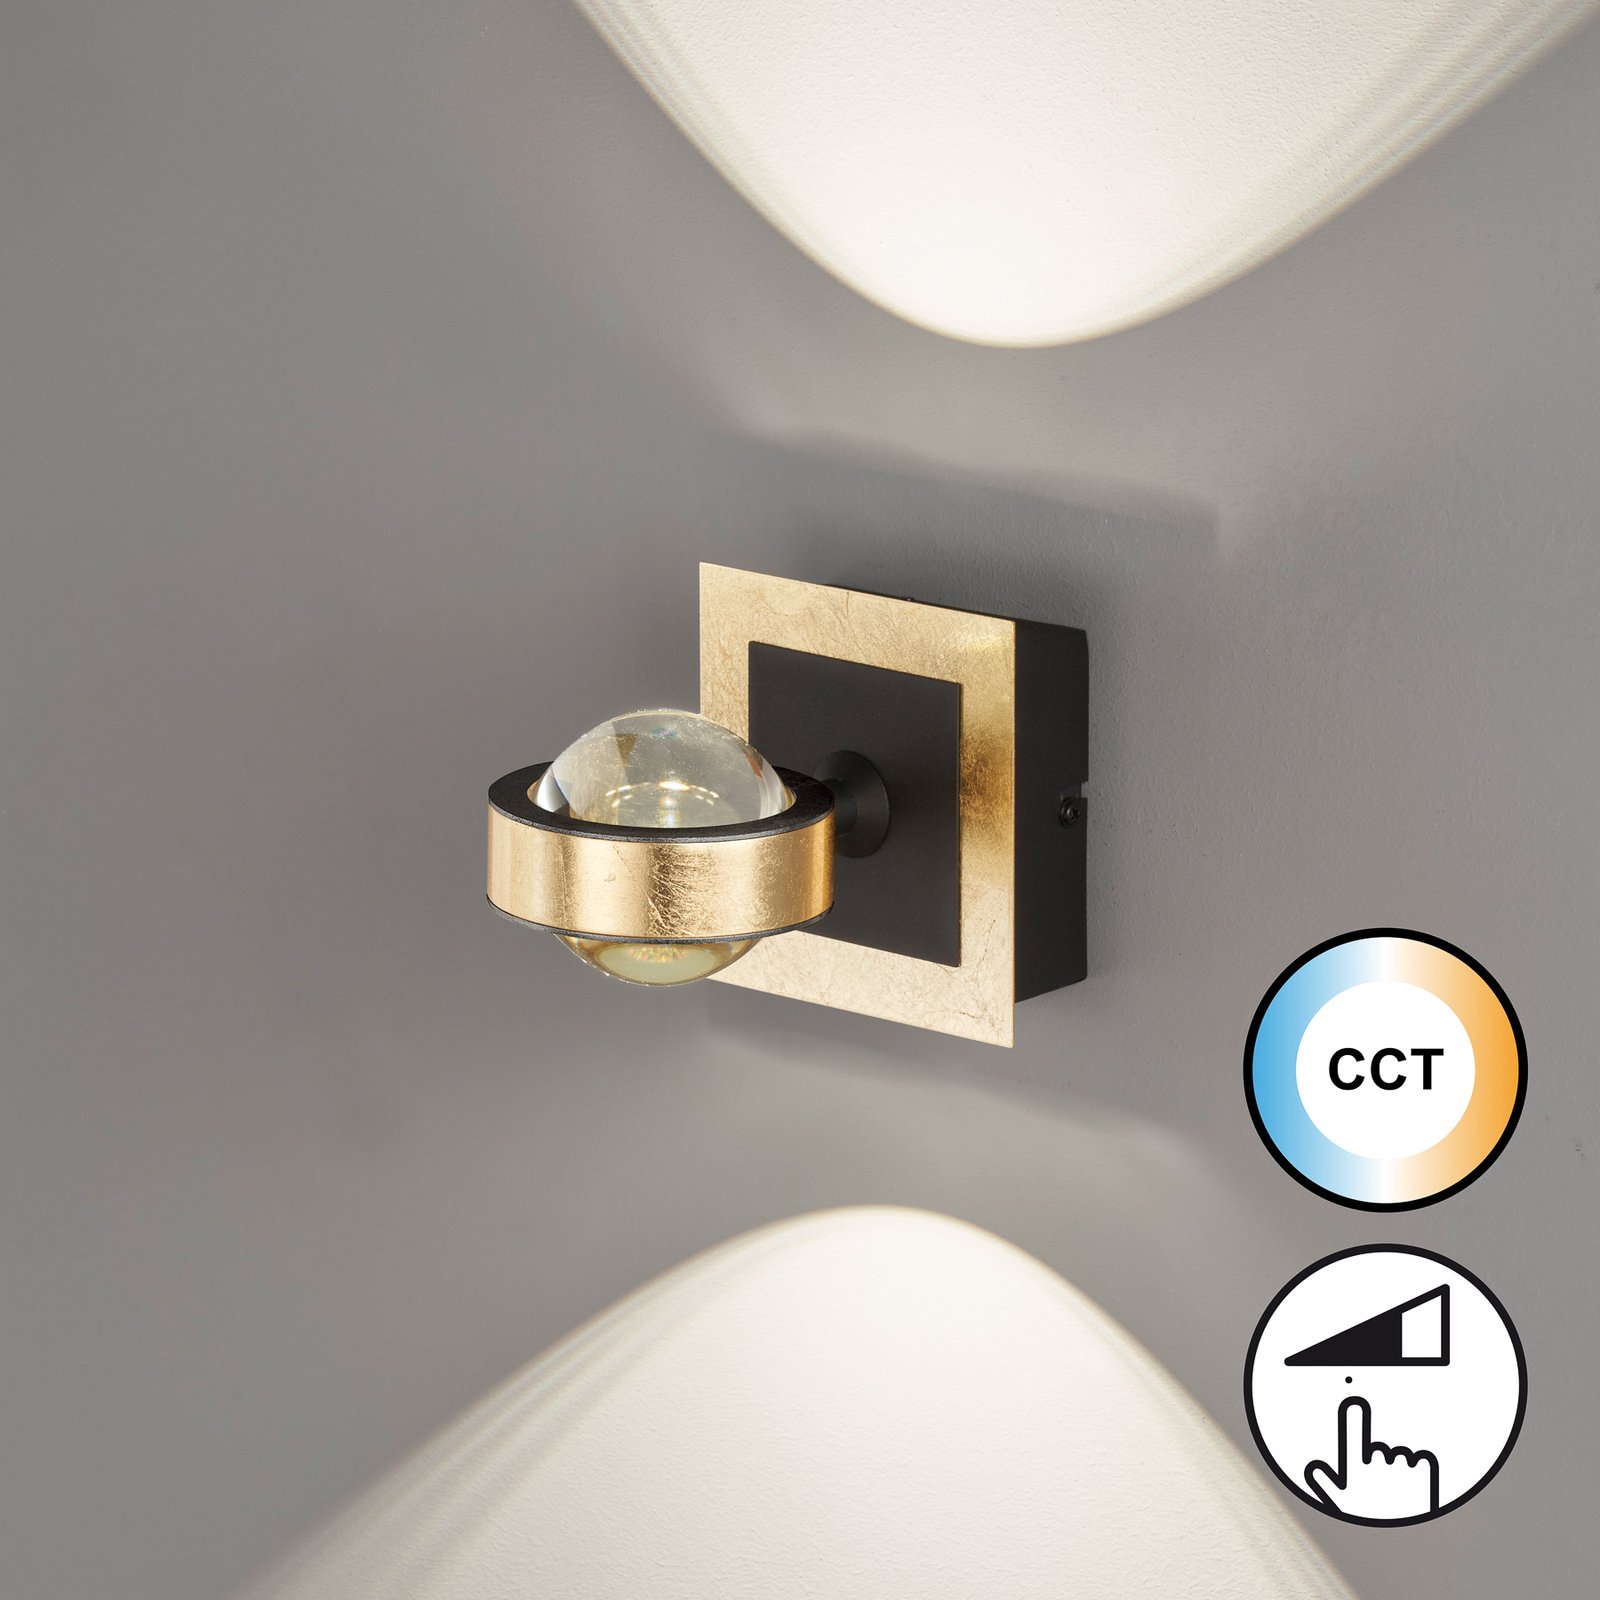 LED лампа за стена Cluedo, златист цвят, ширина 12 см, метал, CCT